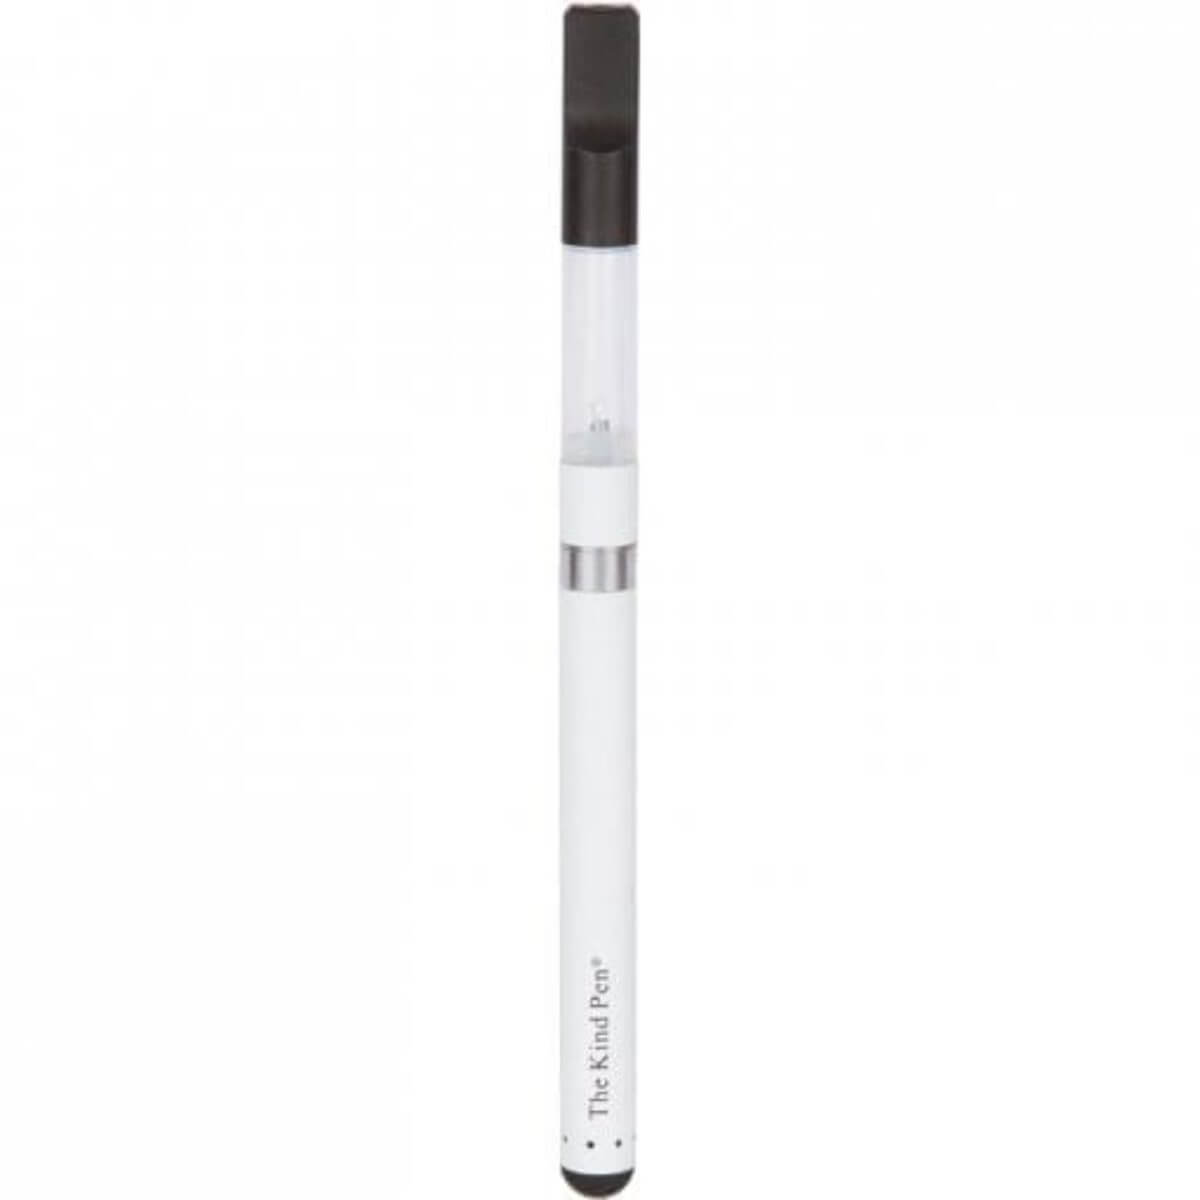 The Kind Pen Oil Vape Pen Autodraw White image1